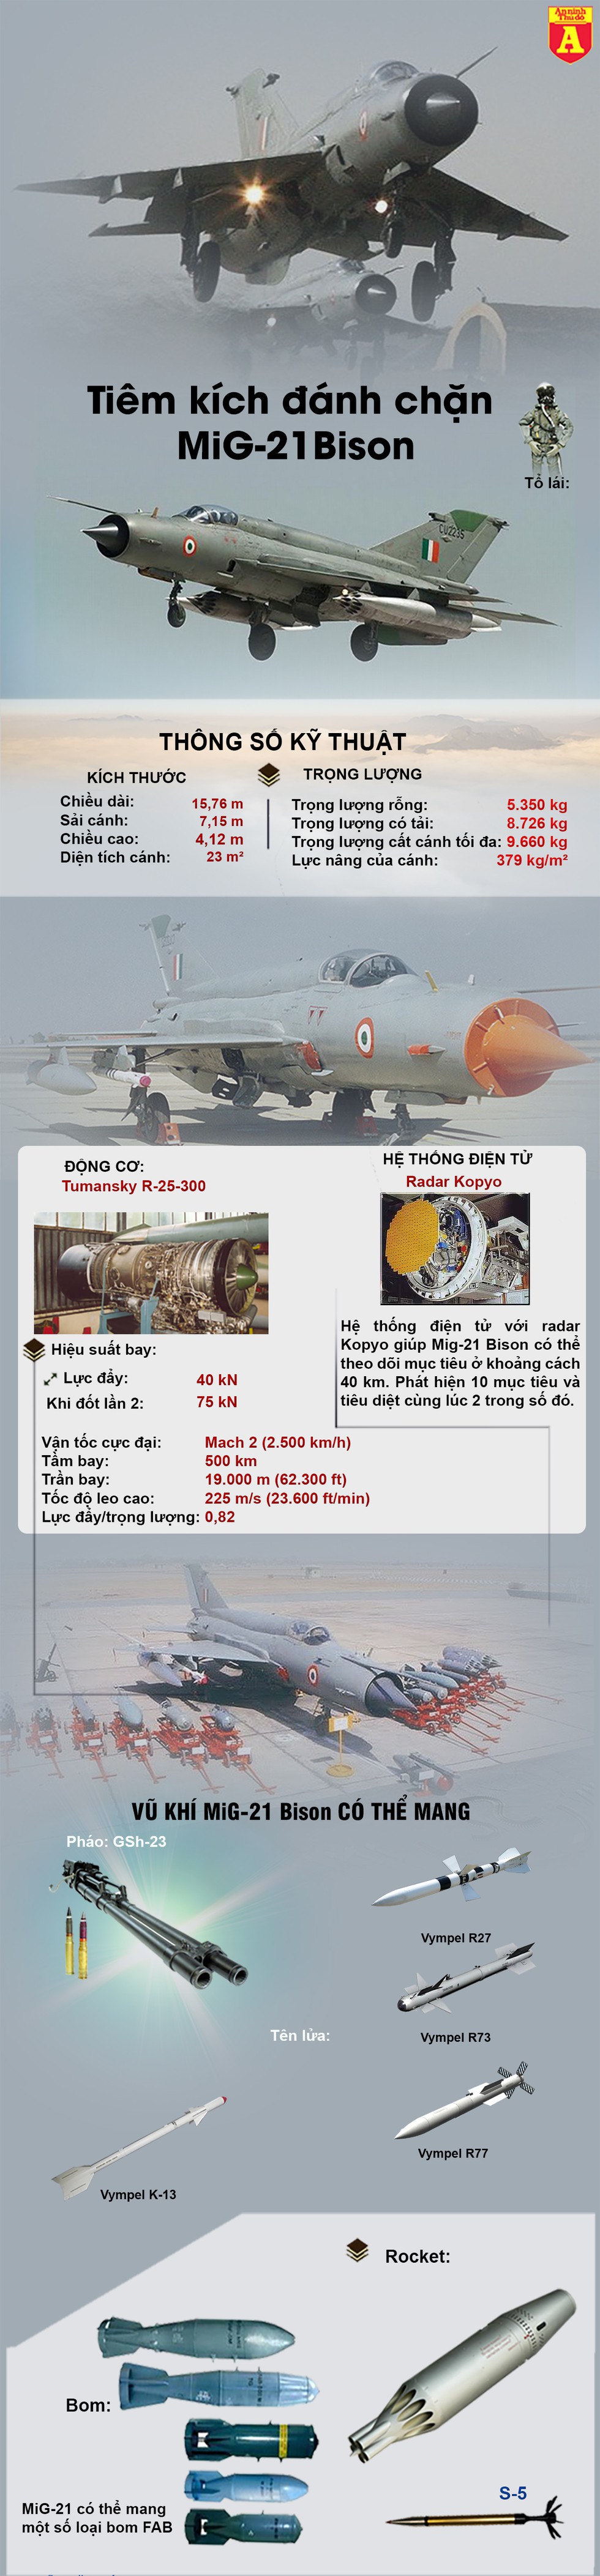 [Infographic] Ấn Độ chốt thời điểm chia tay hàng loạt MiG-21 Bison - Ảnh 1